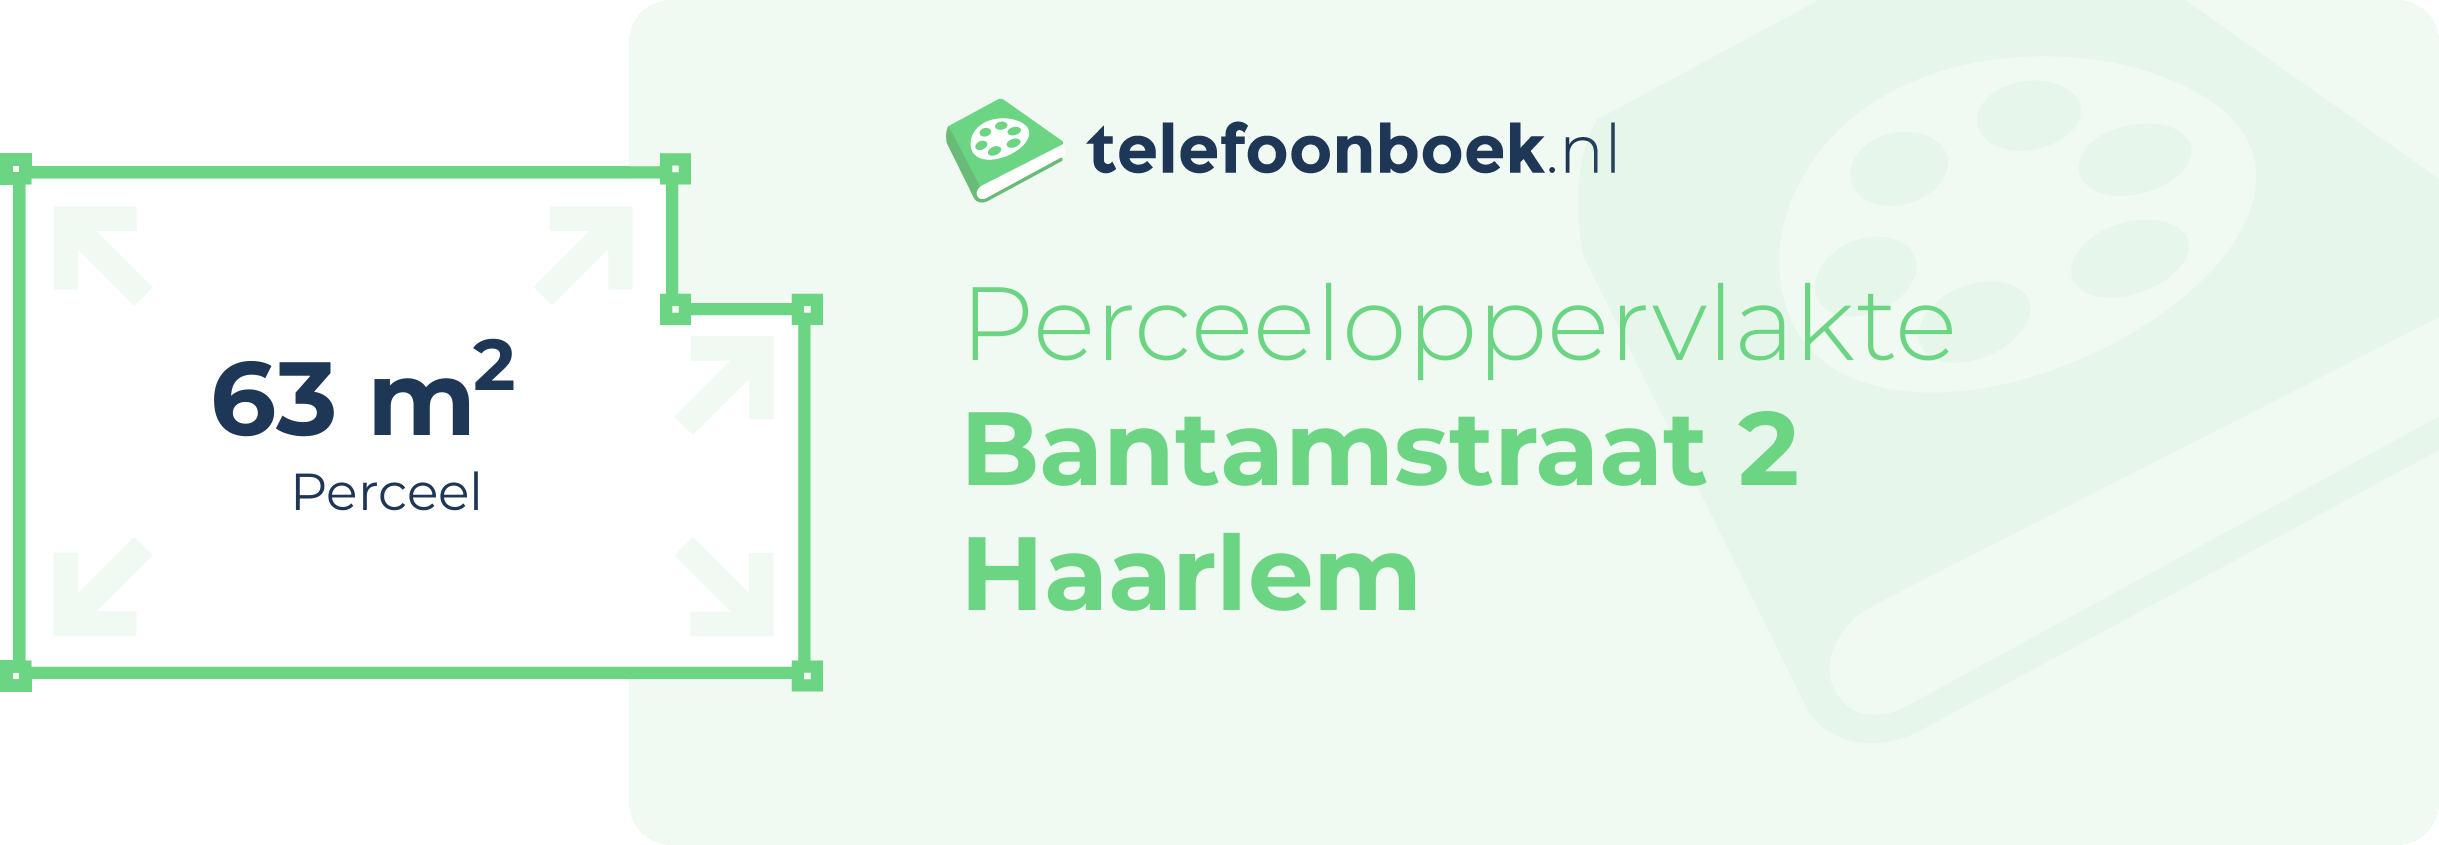 Perceeloppervlakte Bantamstraat 2 Haarlem